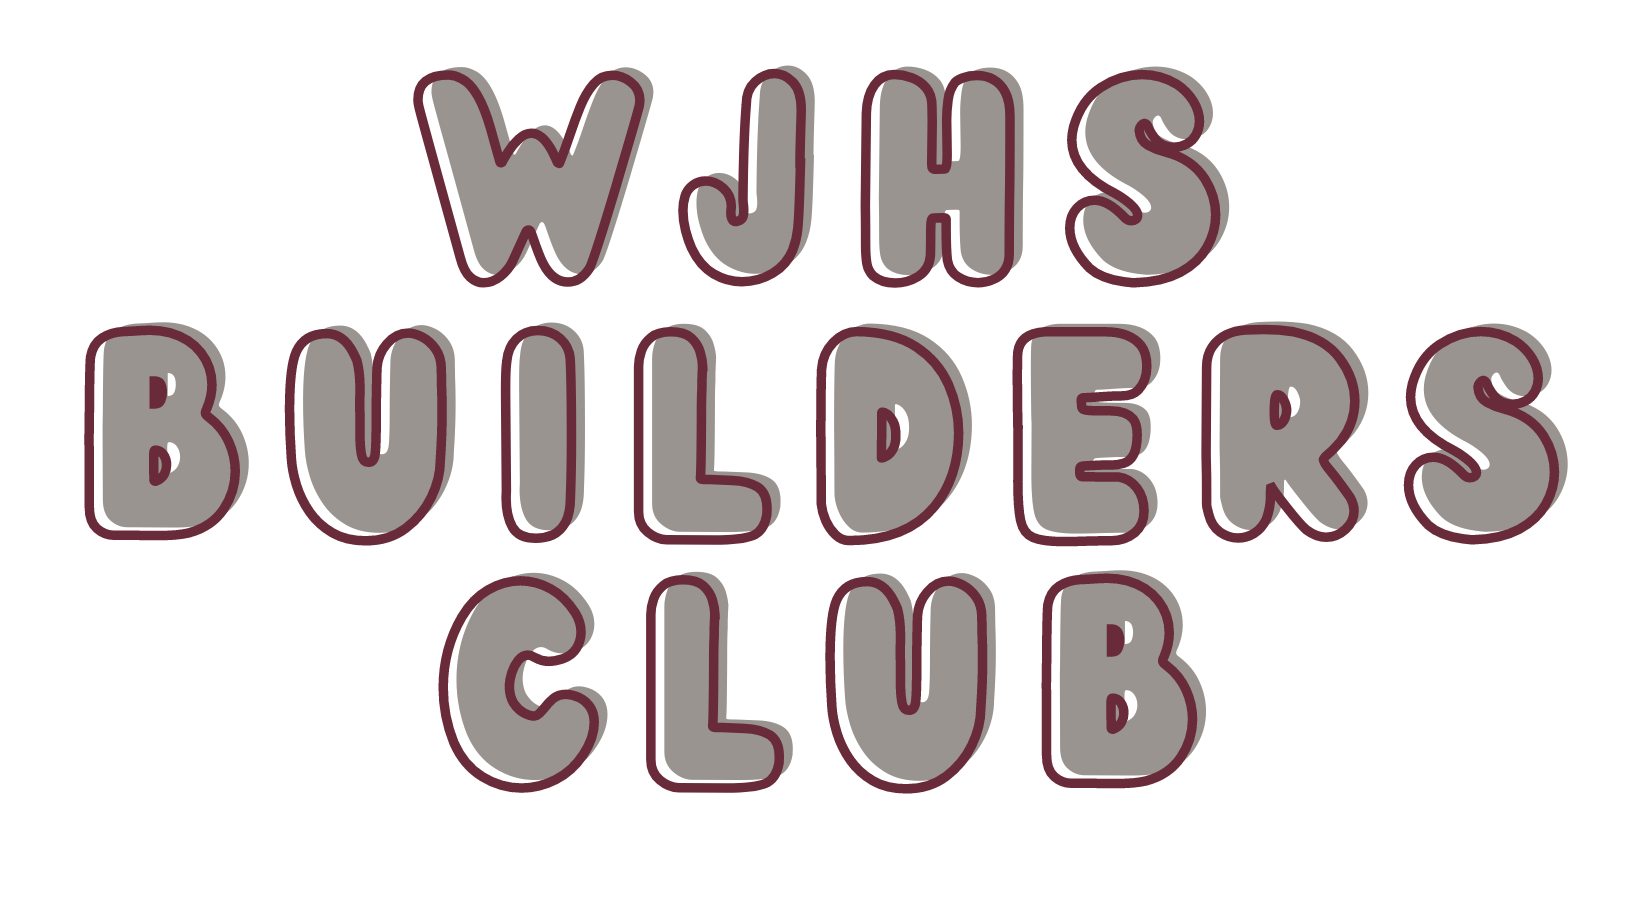 WJHS Builders Club